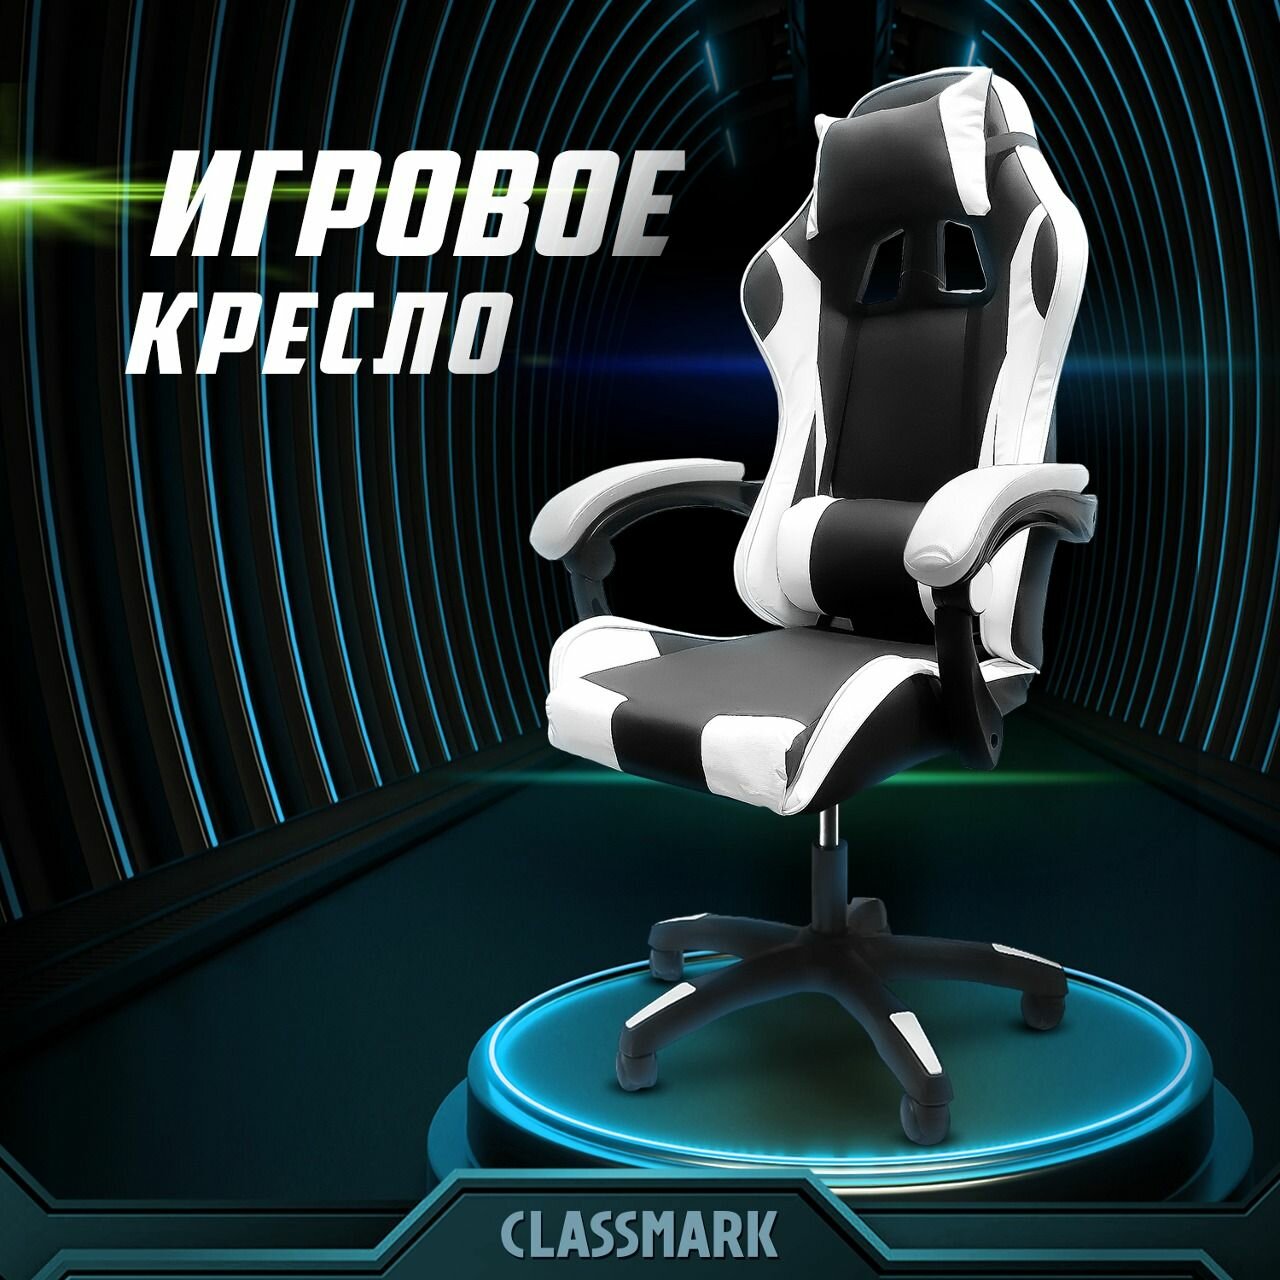 Кресло компьютерное игровое геймерское офисное на колесиках